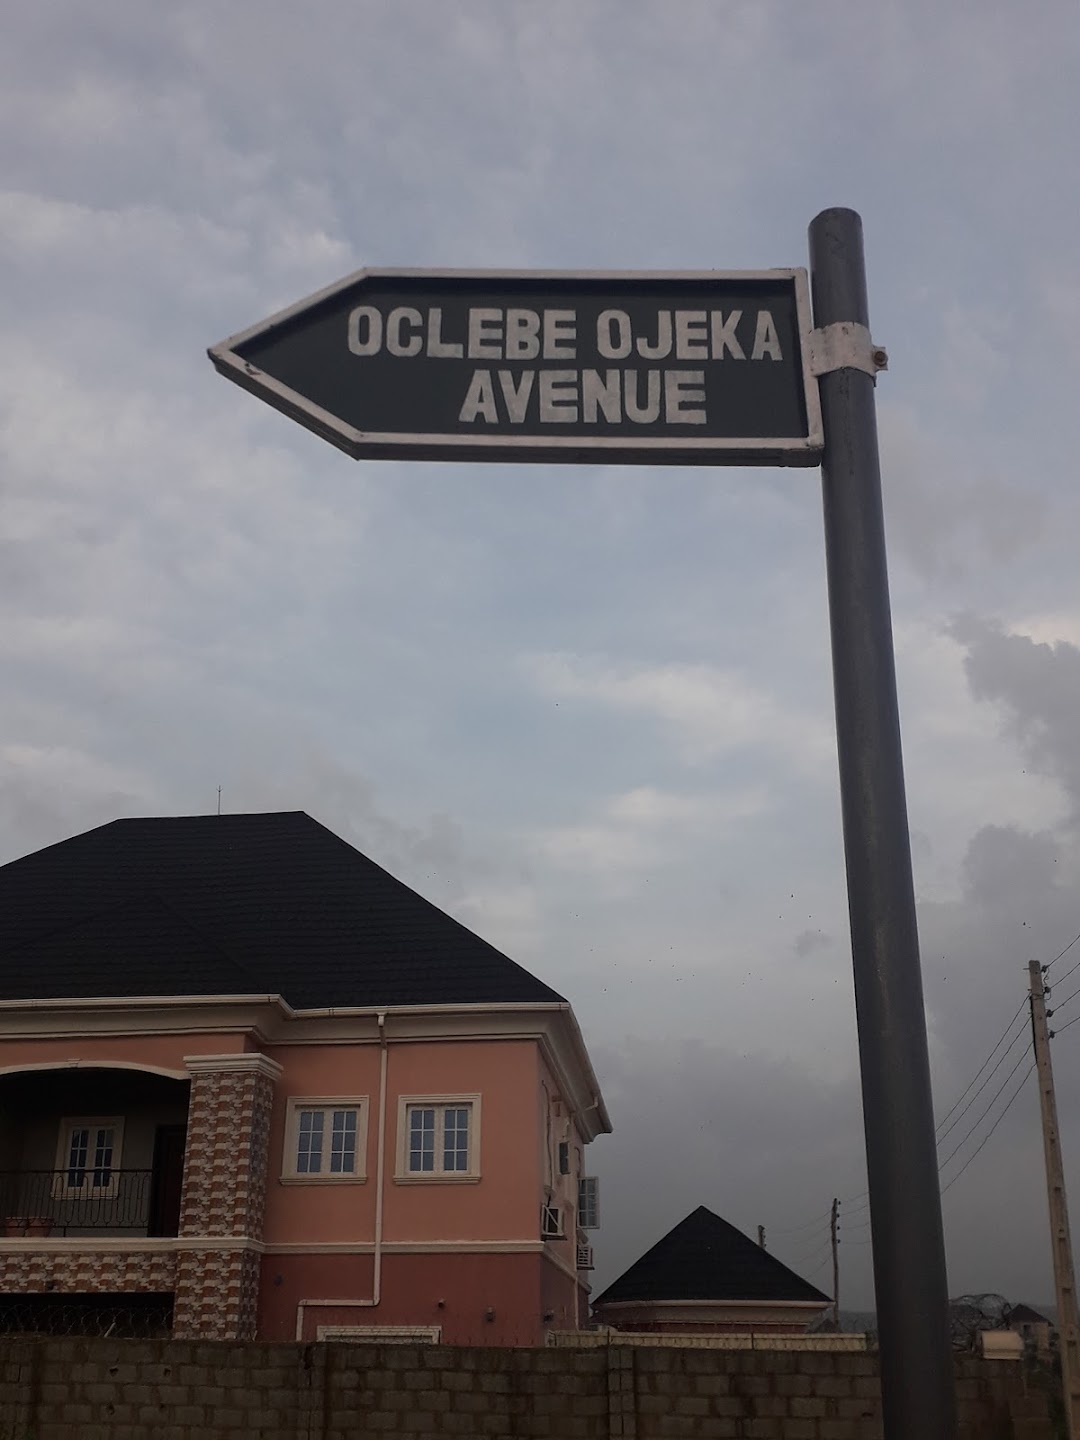 Oclebe Ojeka Avenue Chikakore